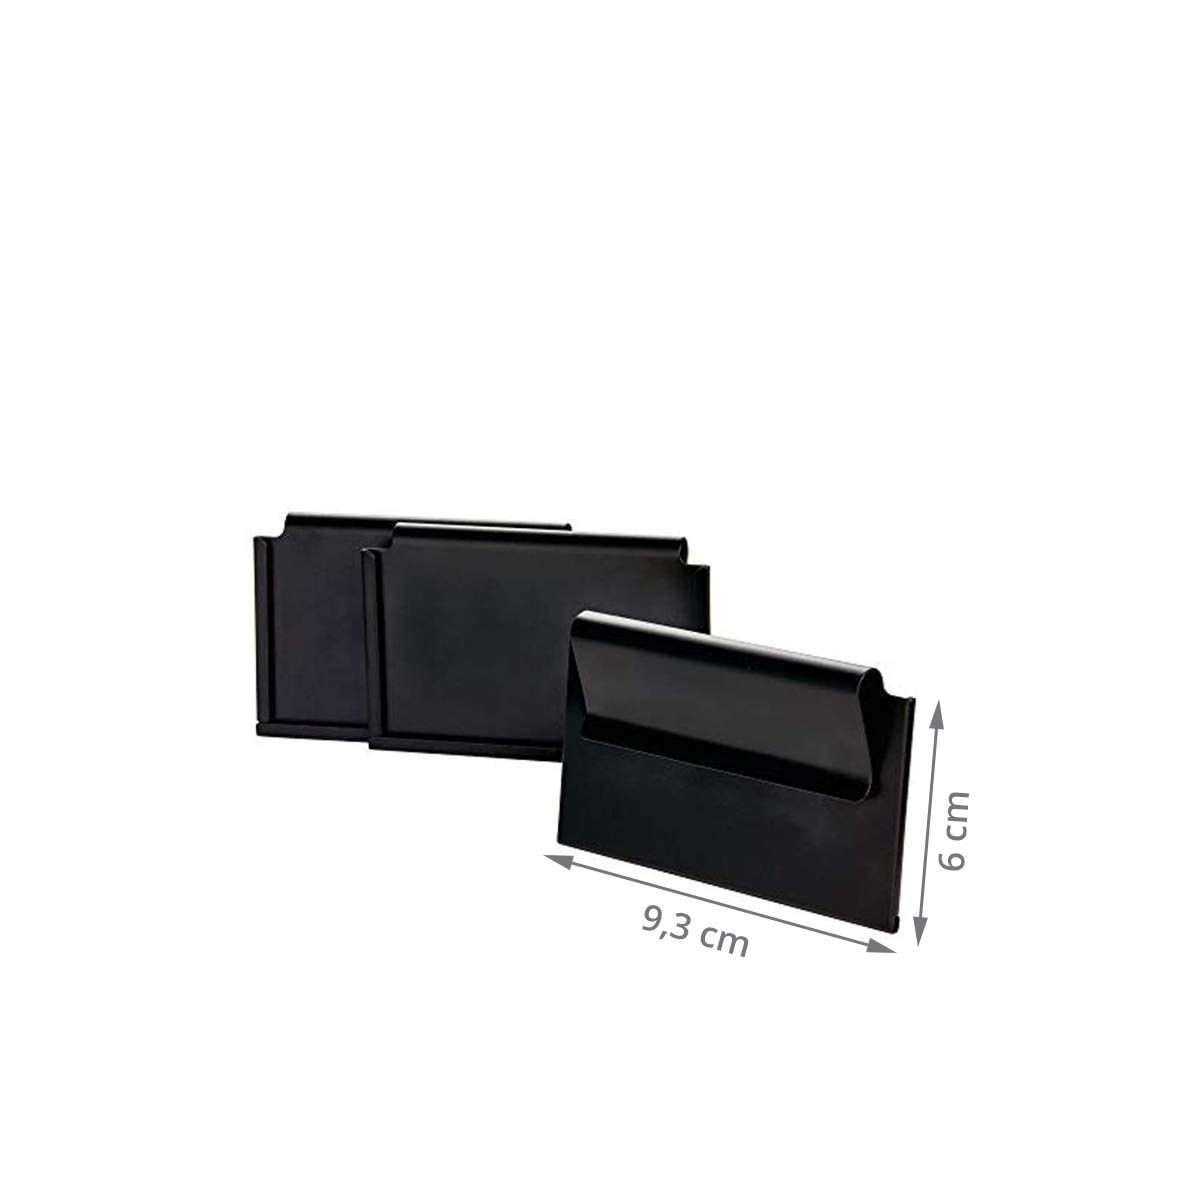 Porte-étiquettes clipsables en métal noir pour panier ou boite